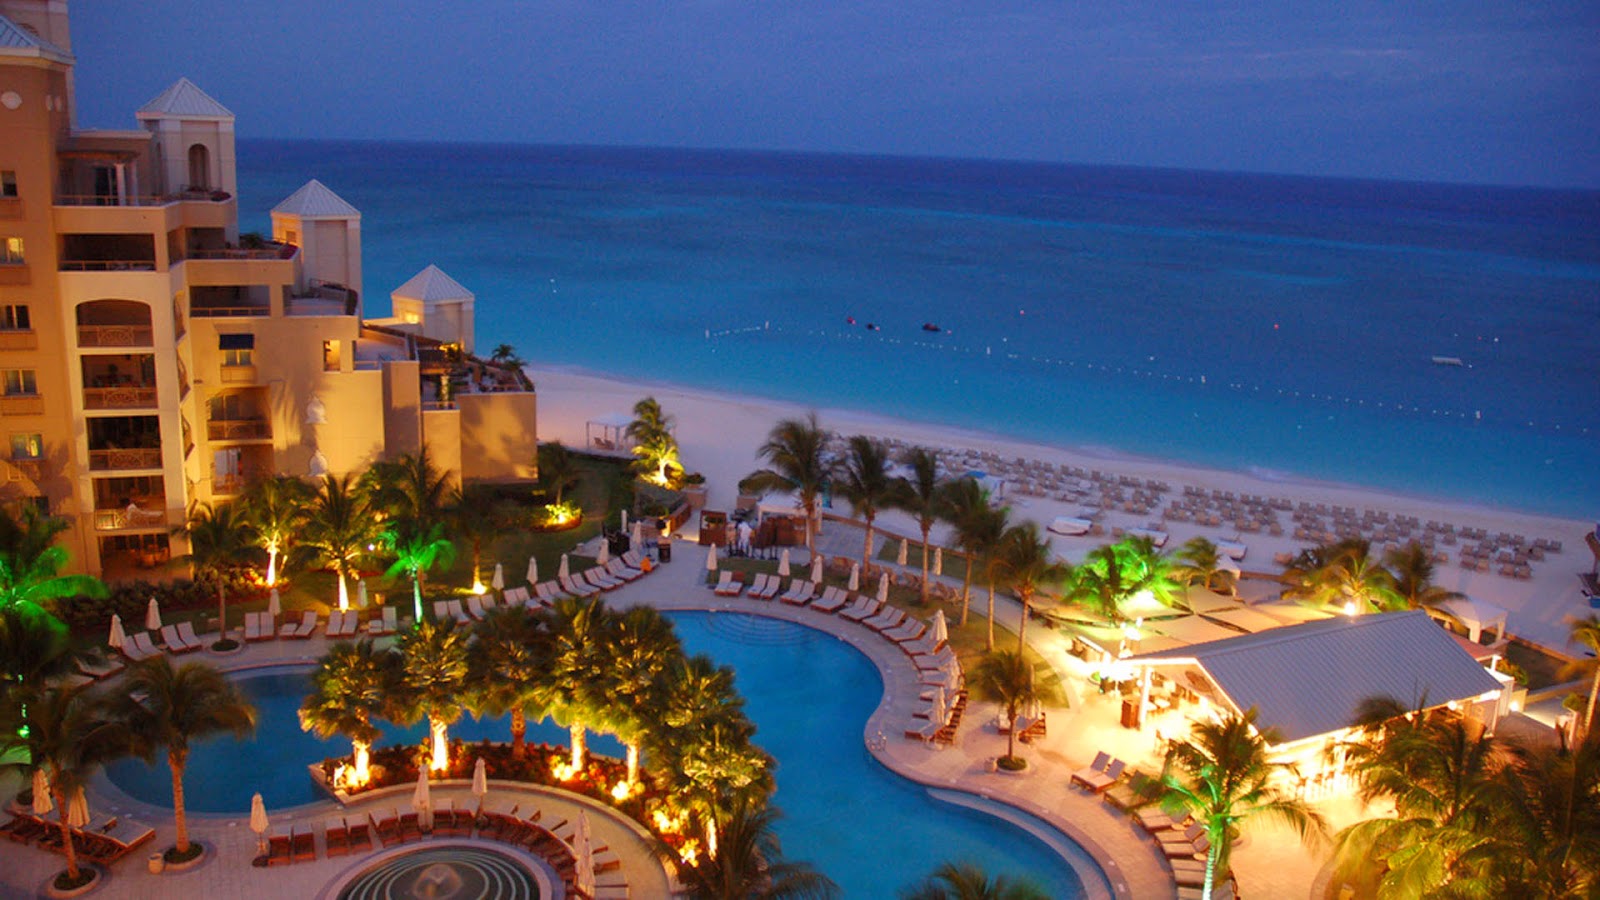 Grand Cayman Island 5 Star Hotels Tegliadesign